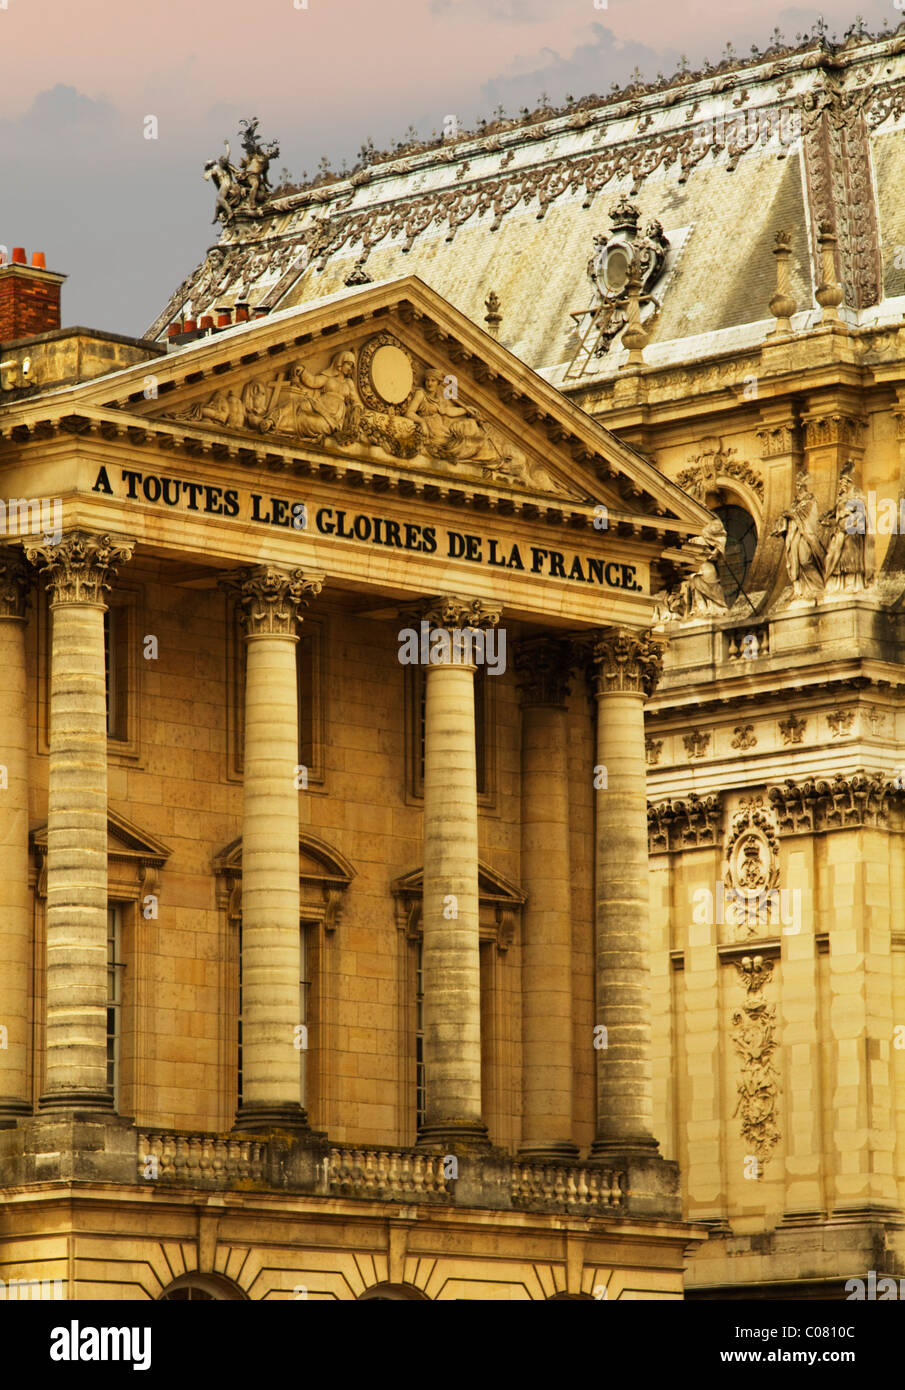 Basso angolo di visione di un palazzo, Chateau de Versailles, Versailles, Parigi, Francia Foto Stock